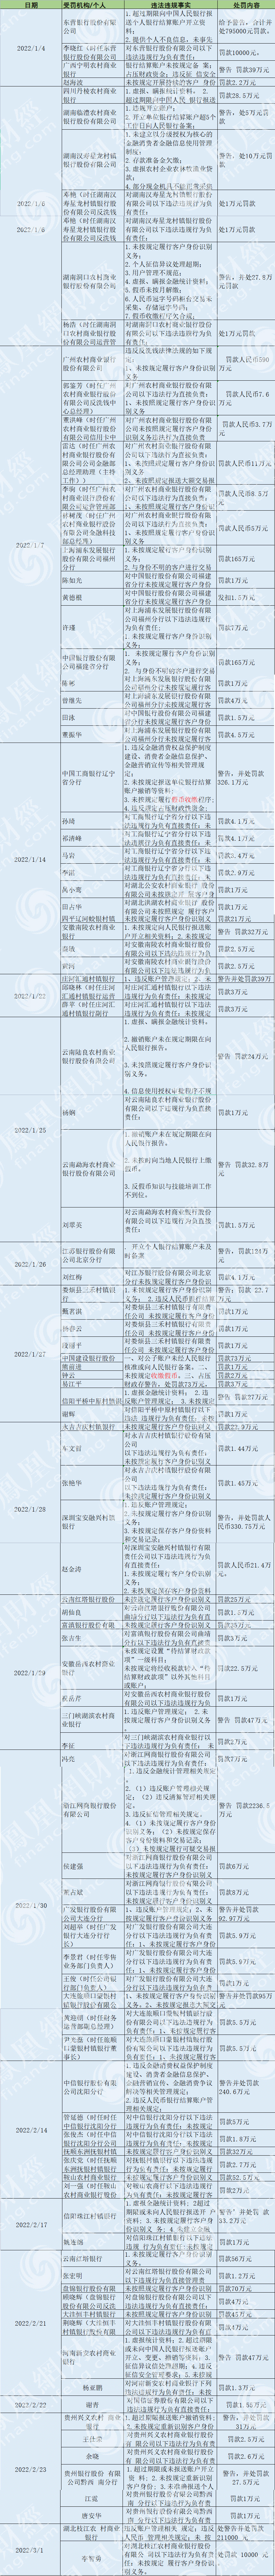 央行严查反洗钱违规：37银行领罚单 广州农商行被罚590万列农商行第一